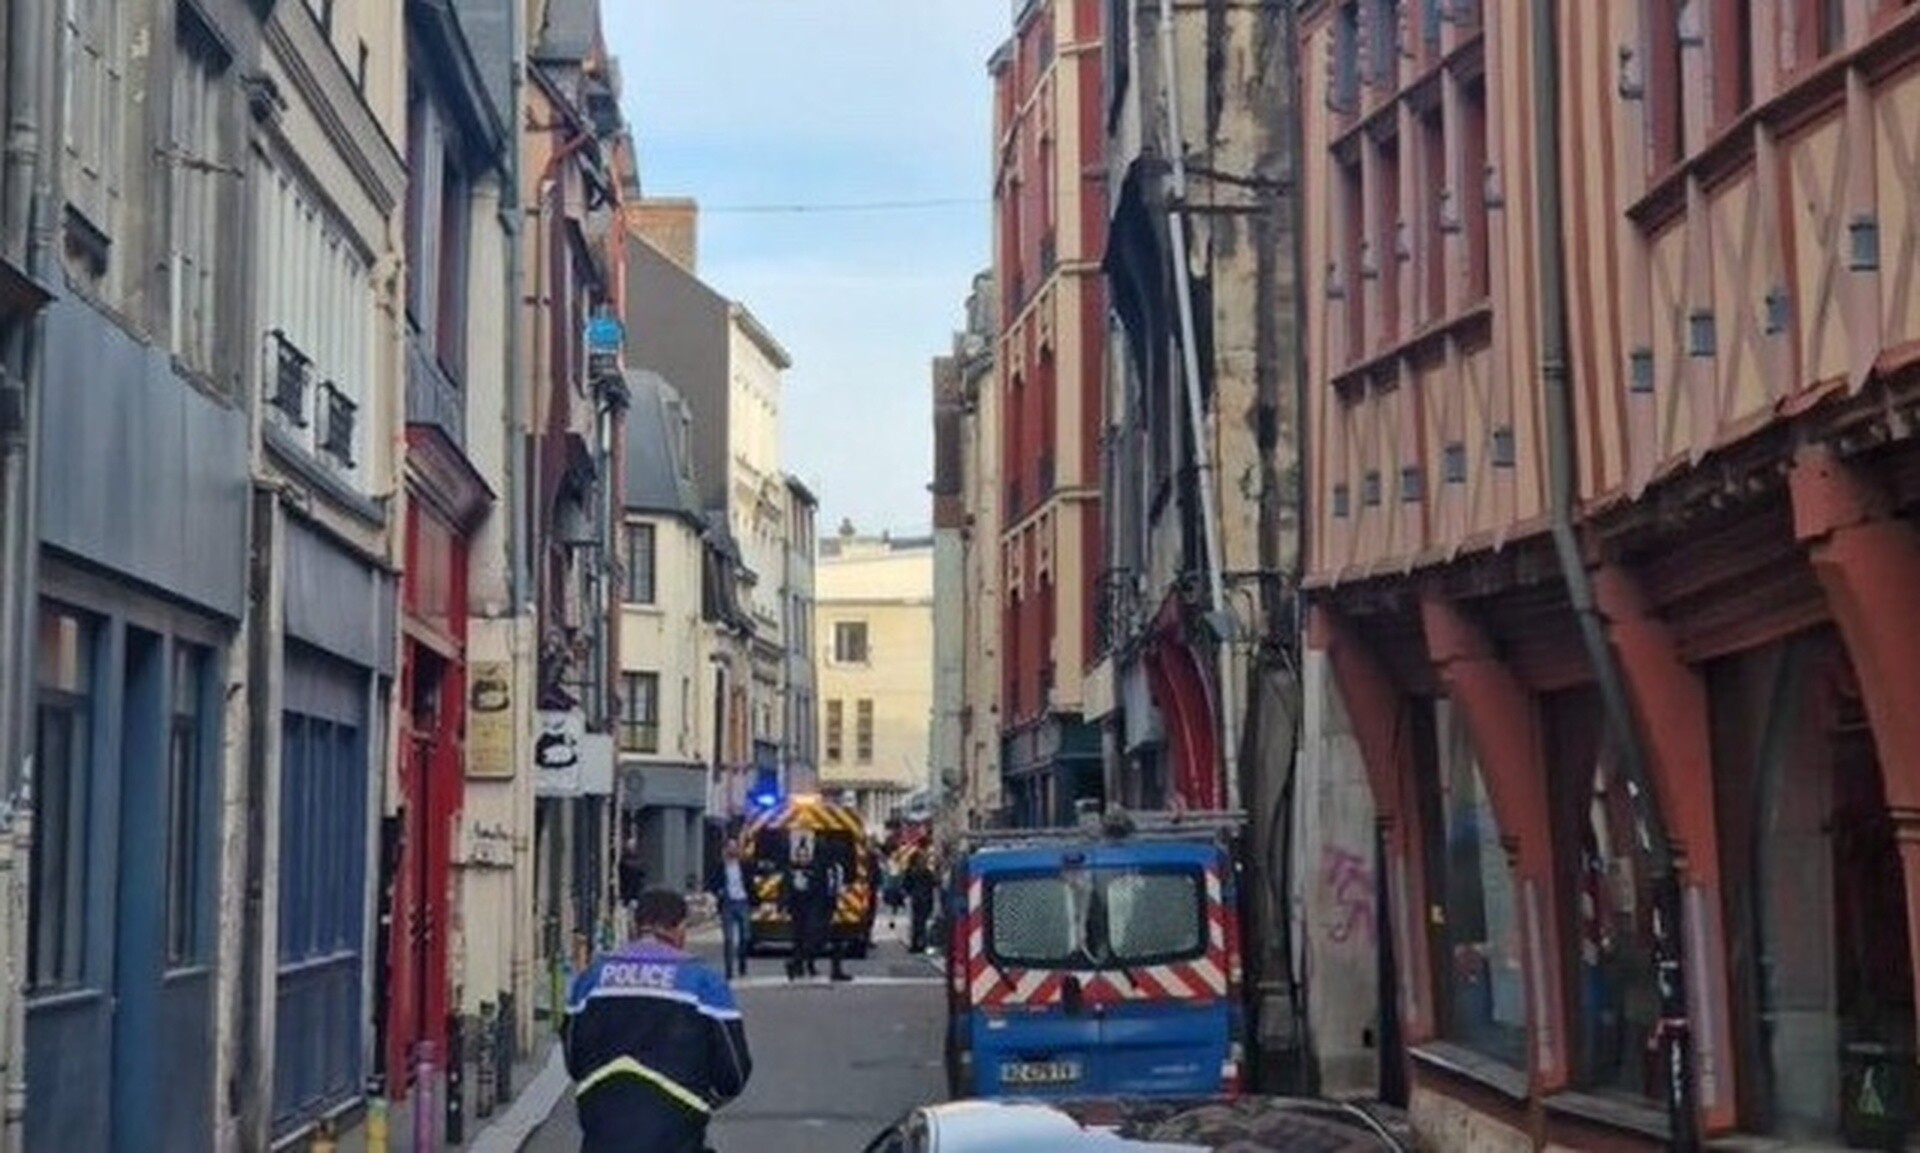 Γαλλία: Άνδρας απειλούσε να βάλει φωτιά σε συναγωγή – Έπεσε νεκρός από τα πυρά αστυνομικών